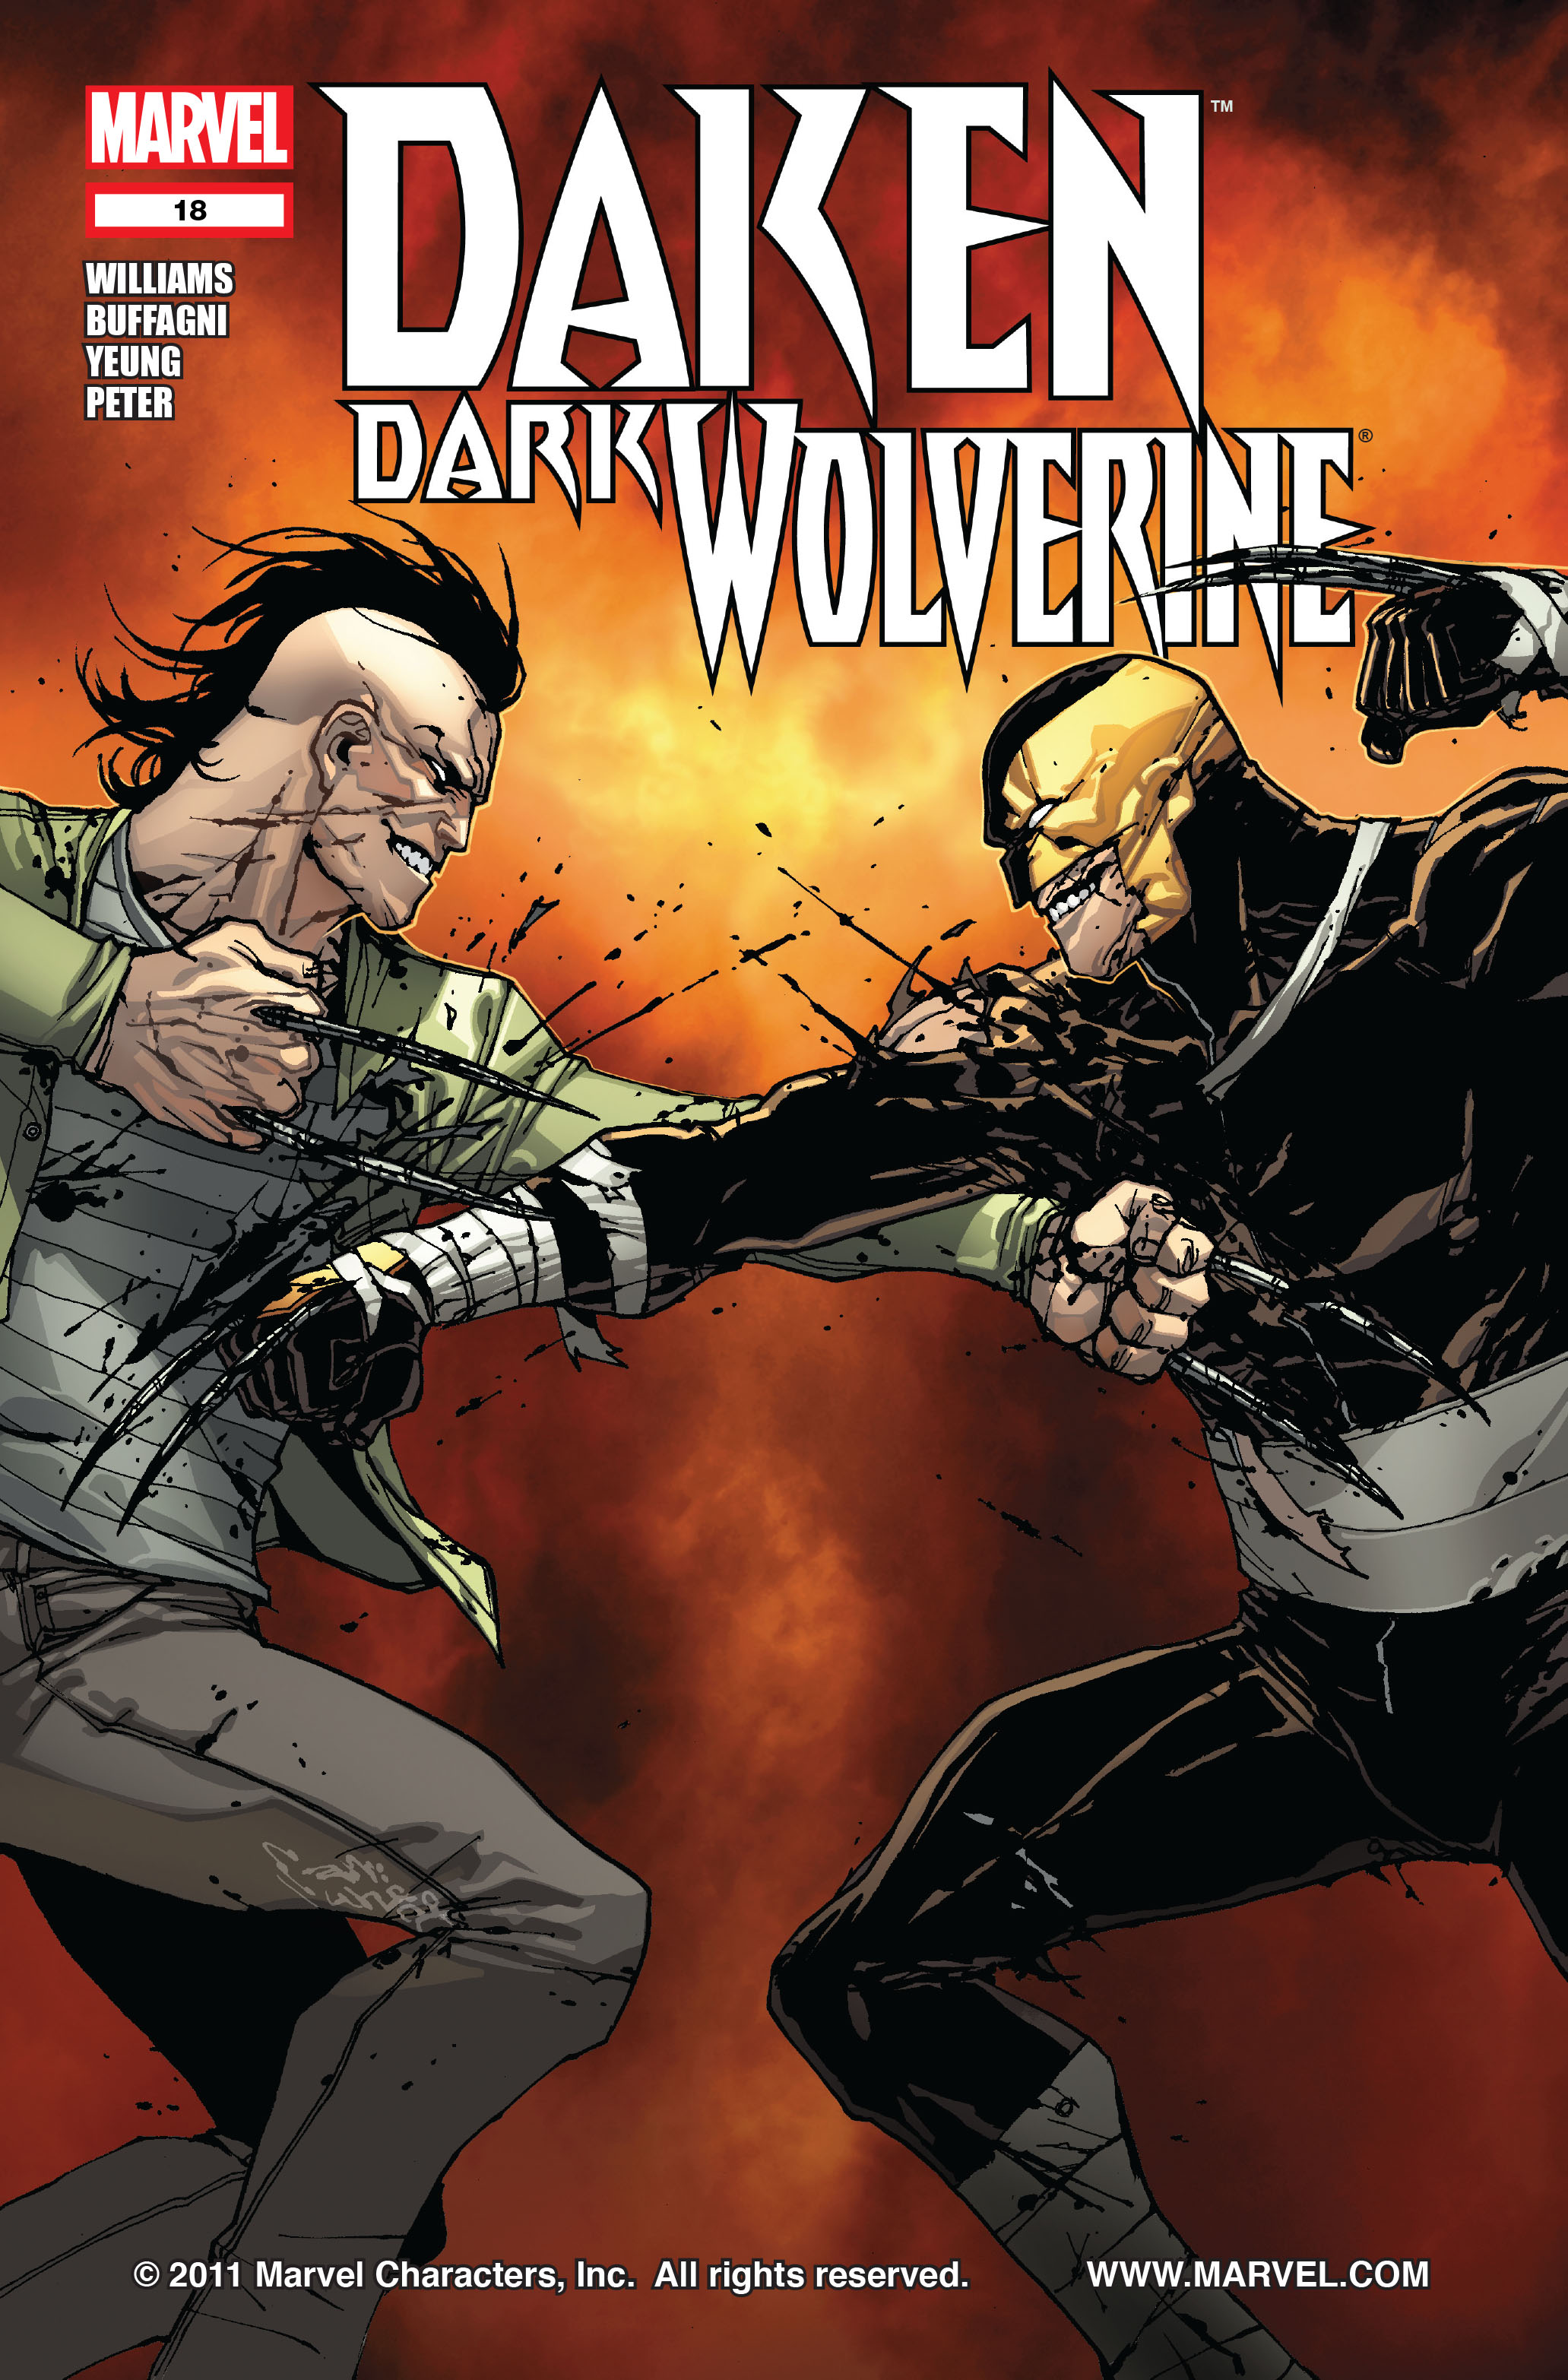 Daken Marvel Gay Porn - Daken Dark Wolverine Issue 18 | Read Daken Dark Wolverine Issue 18 comic  online in high quality. Read Full Comic online for free - Read comics  online in high quality .| READ COMIC ONLINE